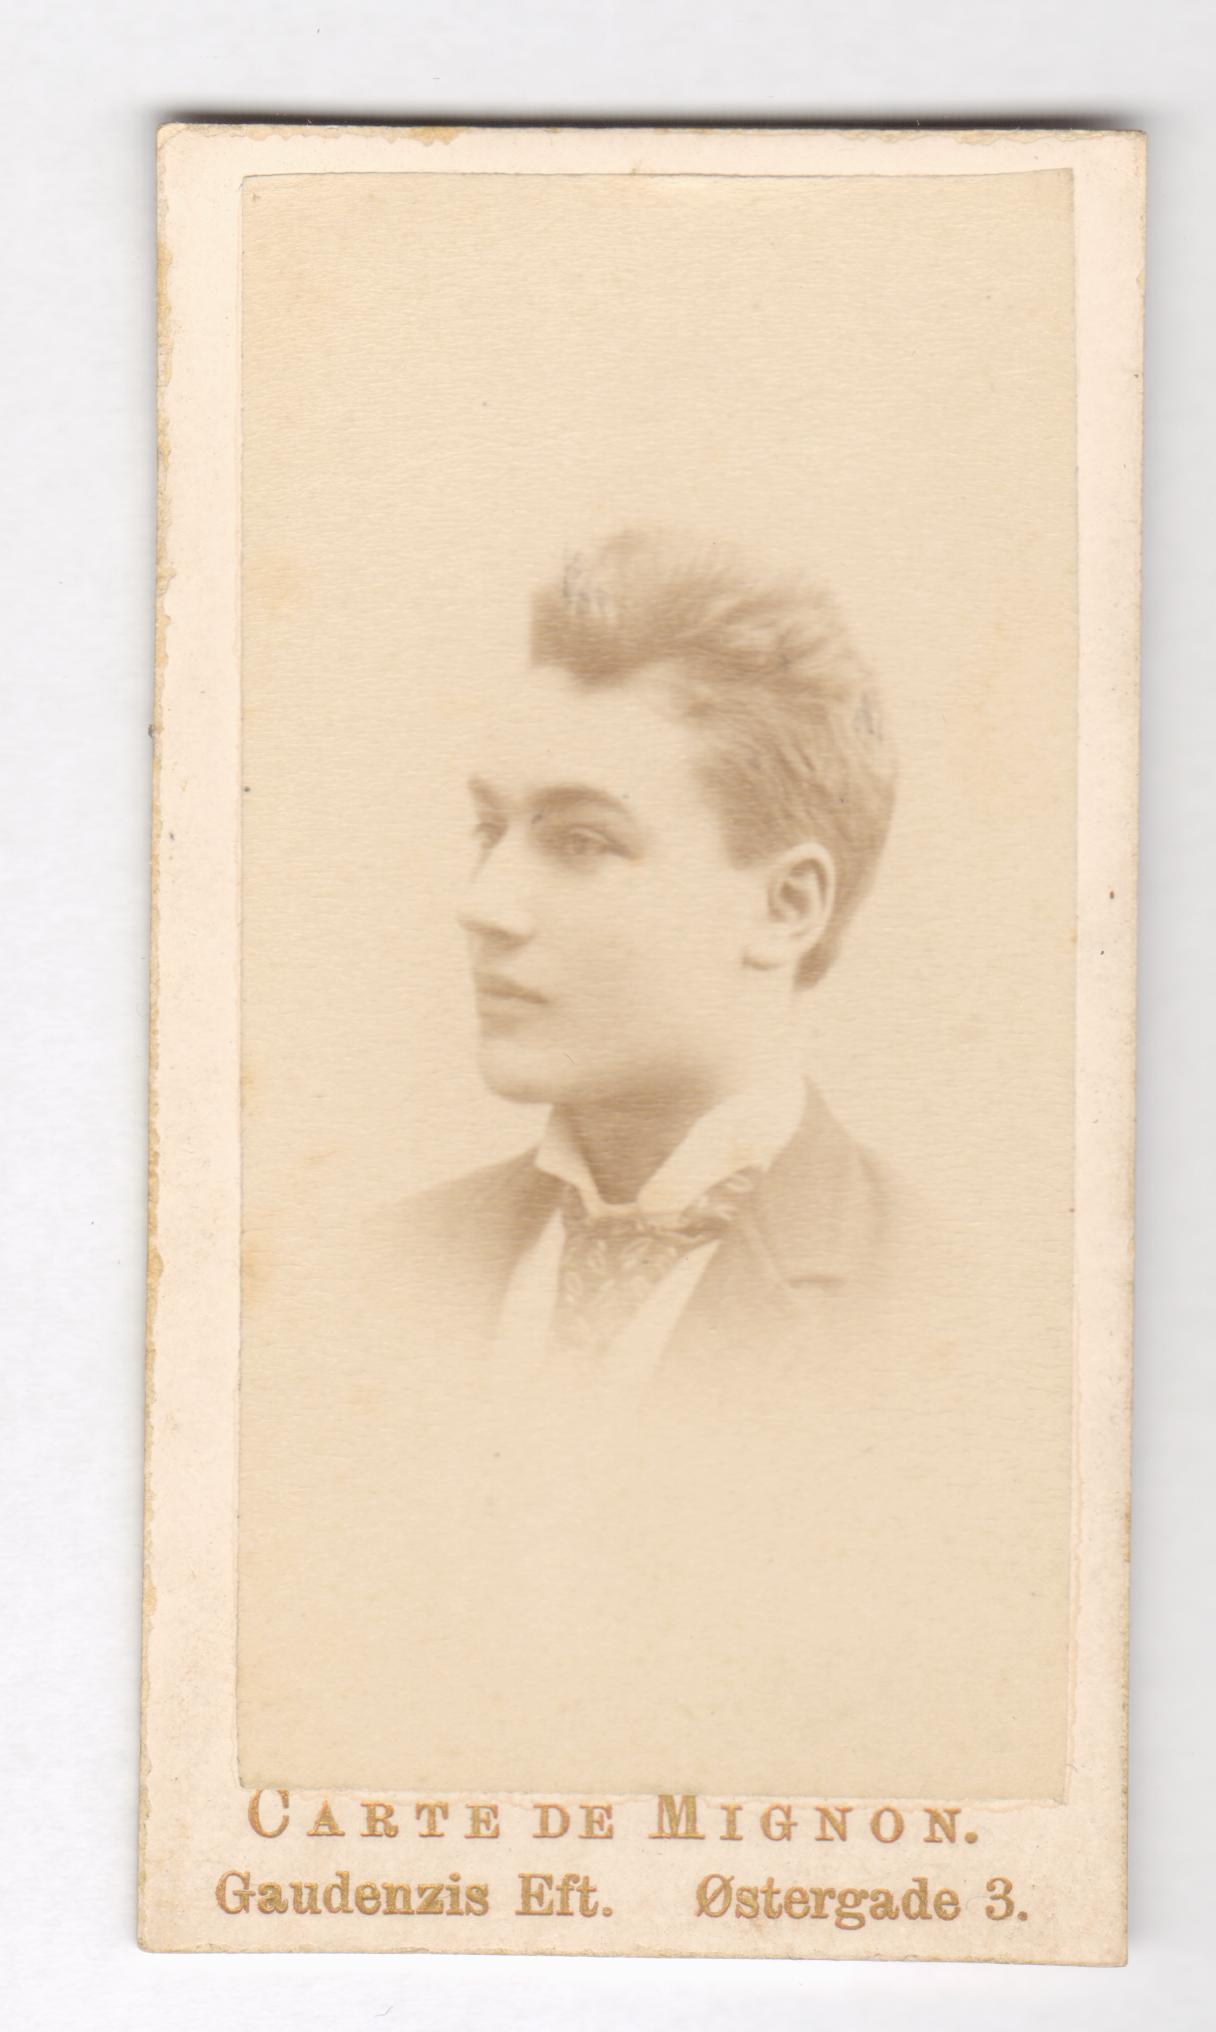 75.97  Aage Borch, søn af William Borch, broder til Anna.  Fotograf Carte Mignon, Gaudenzis Eftf. København  Udateret men Gaudenzi dør i 1888, så derefter.